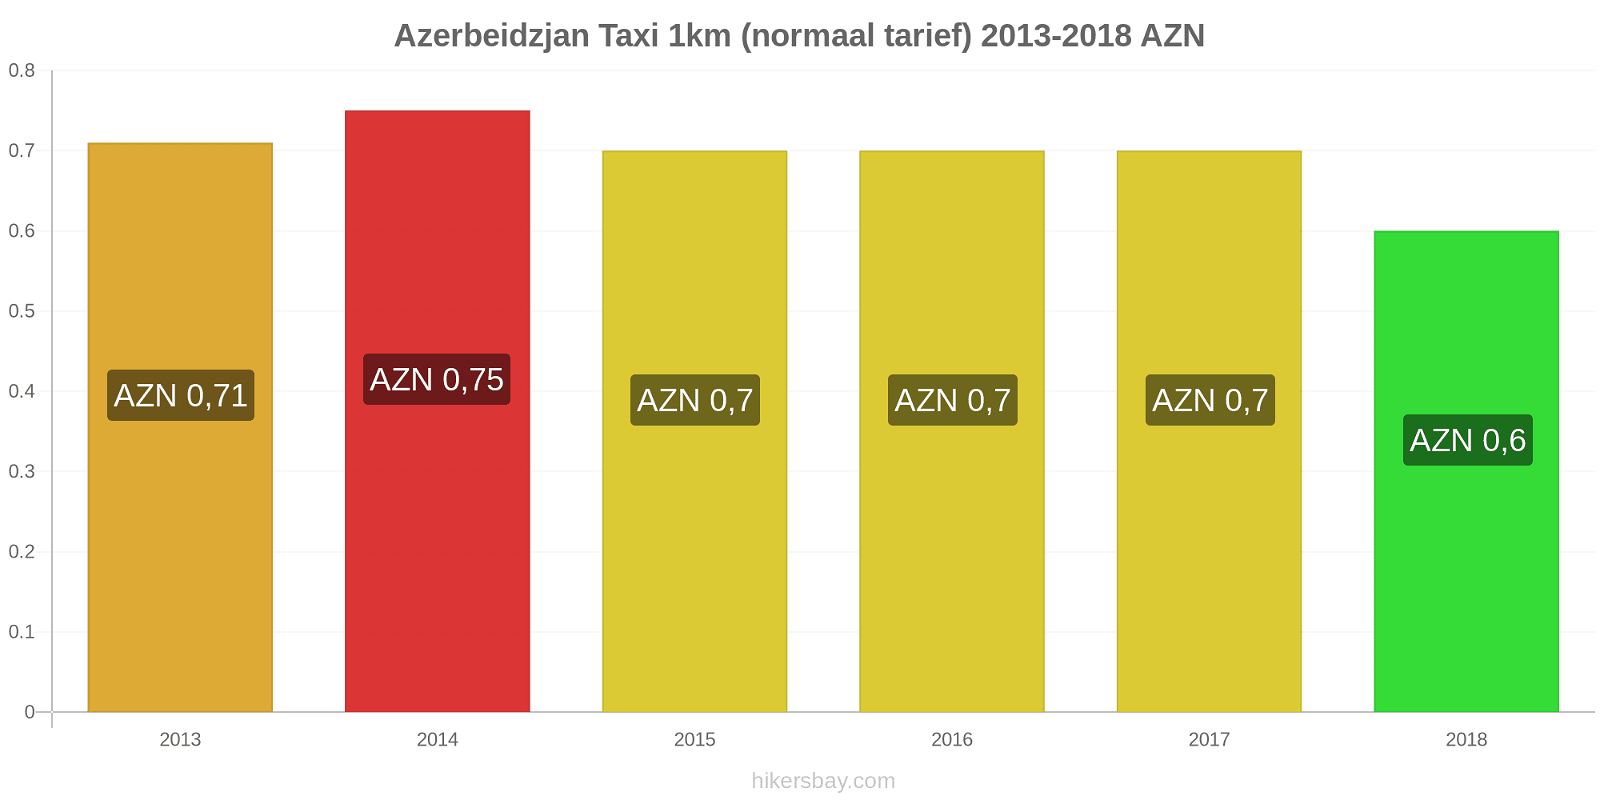 Azerbeidzjan prijswijzigingen Taxi 1km (normaal tarief) hikersbay.com